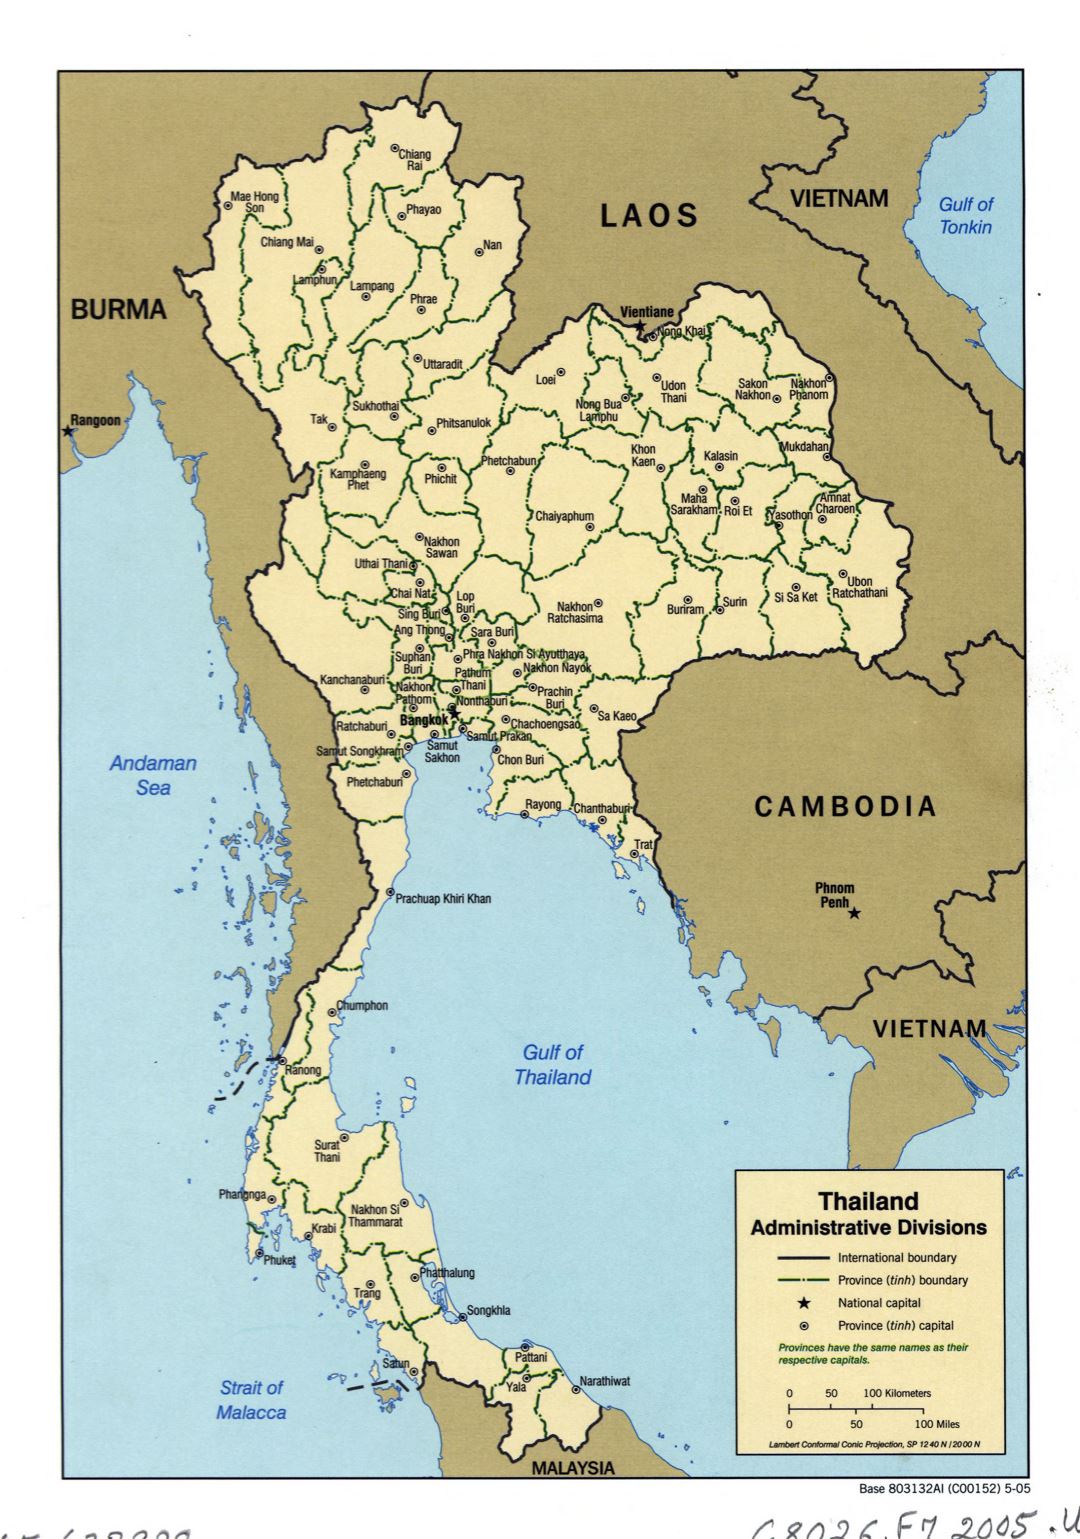 Grande detallado mapa de administrativas divisiones de Tailandia - 2005